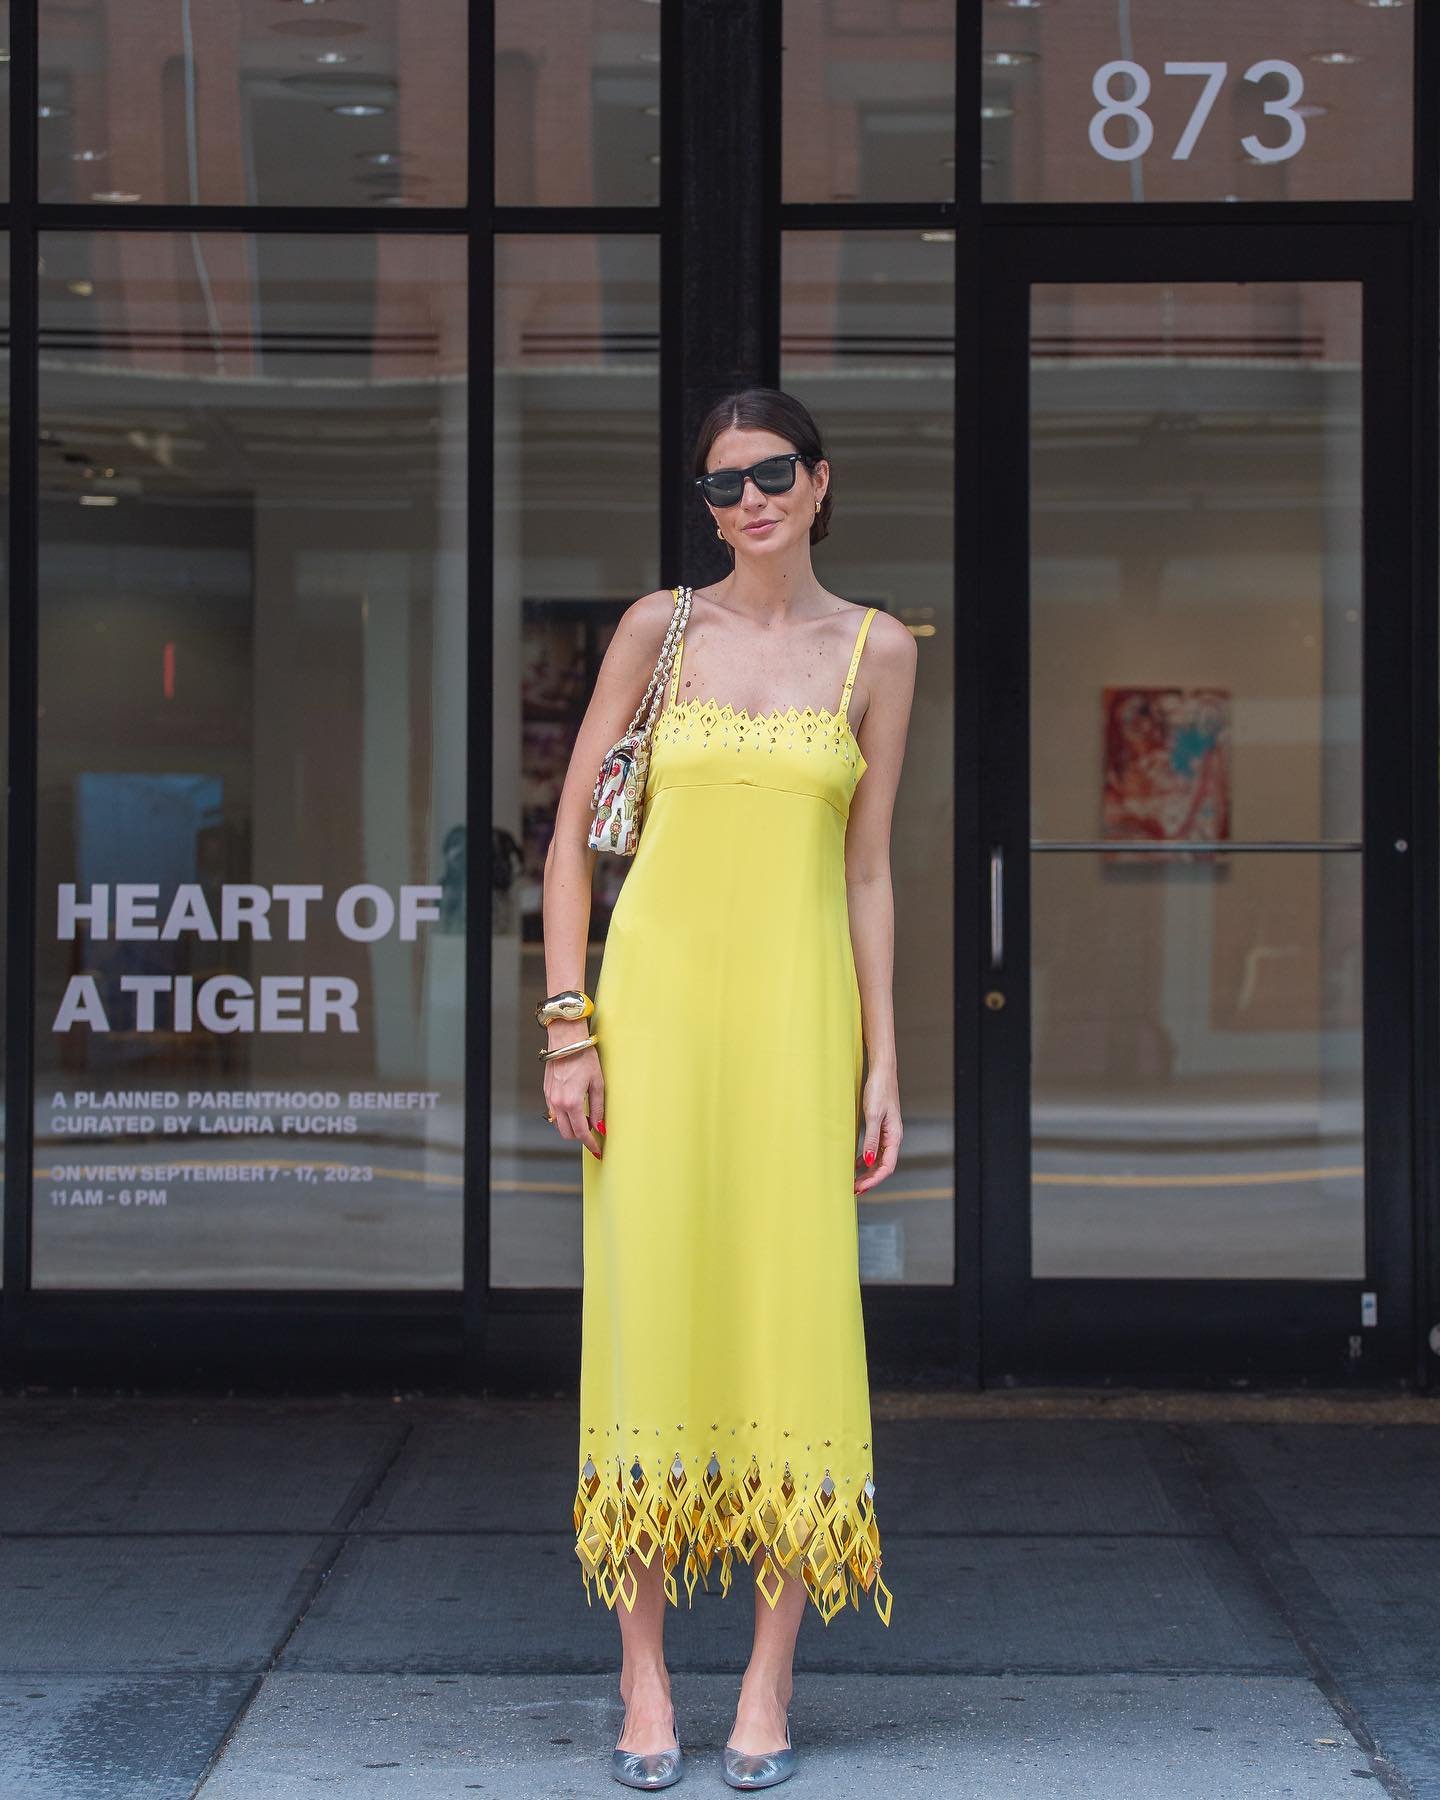 Manuela Bordasch - semana de moda - semana de moda - Verão - Nova York - https://stealthelook.com.br